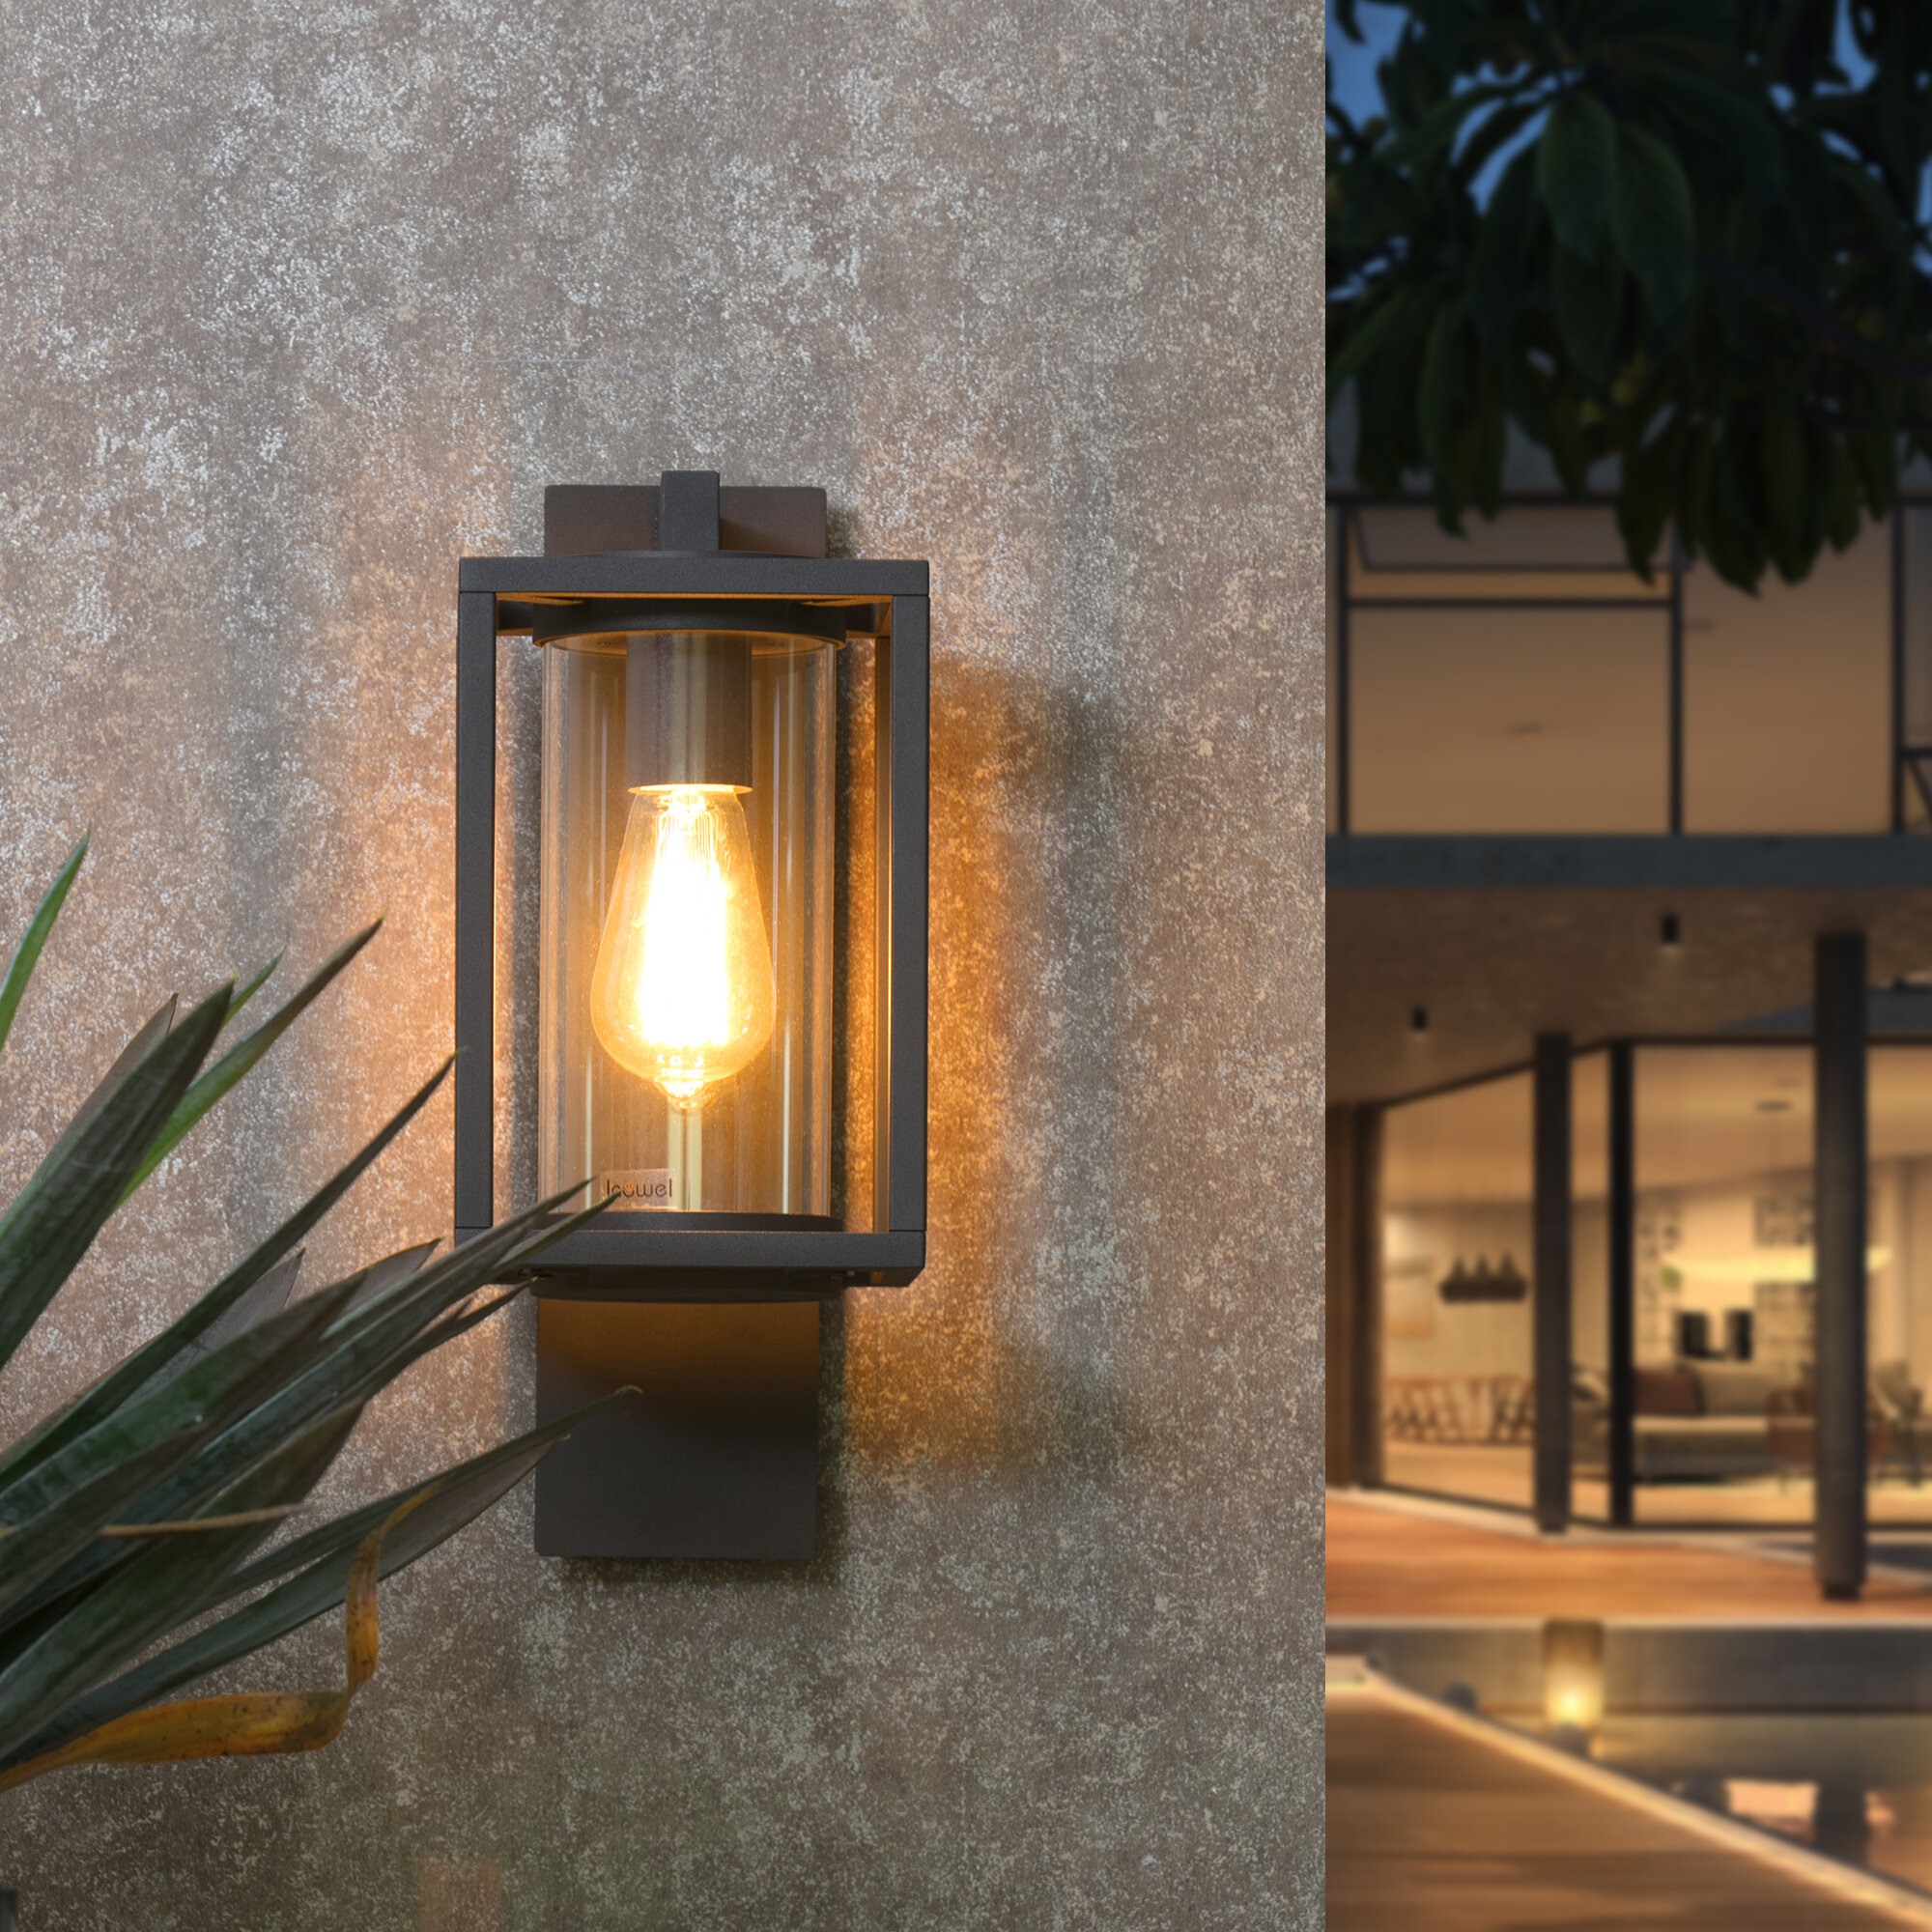 Stories Wall Light Outdoor Wall E26 (Not Include) Modern Wall Sconce Lighting Lantern | Wayfair